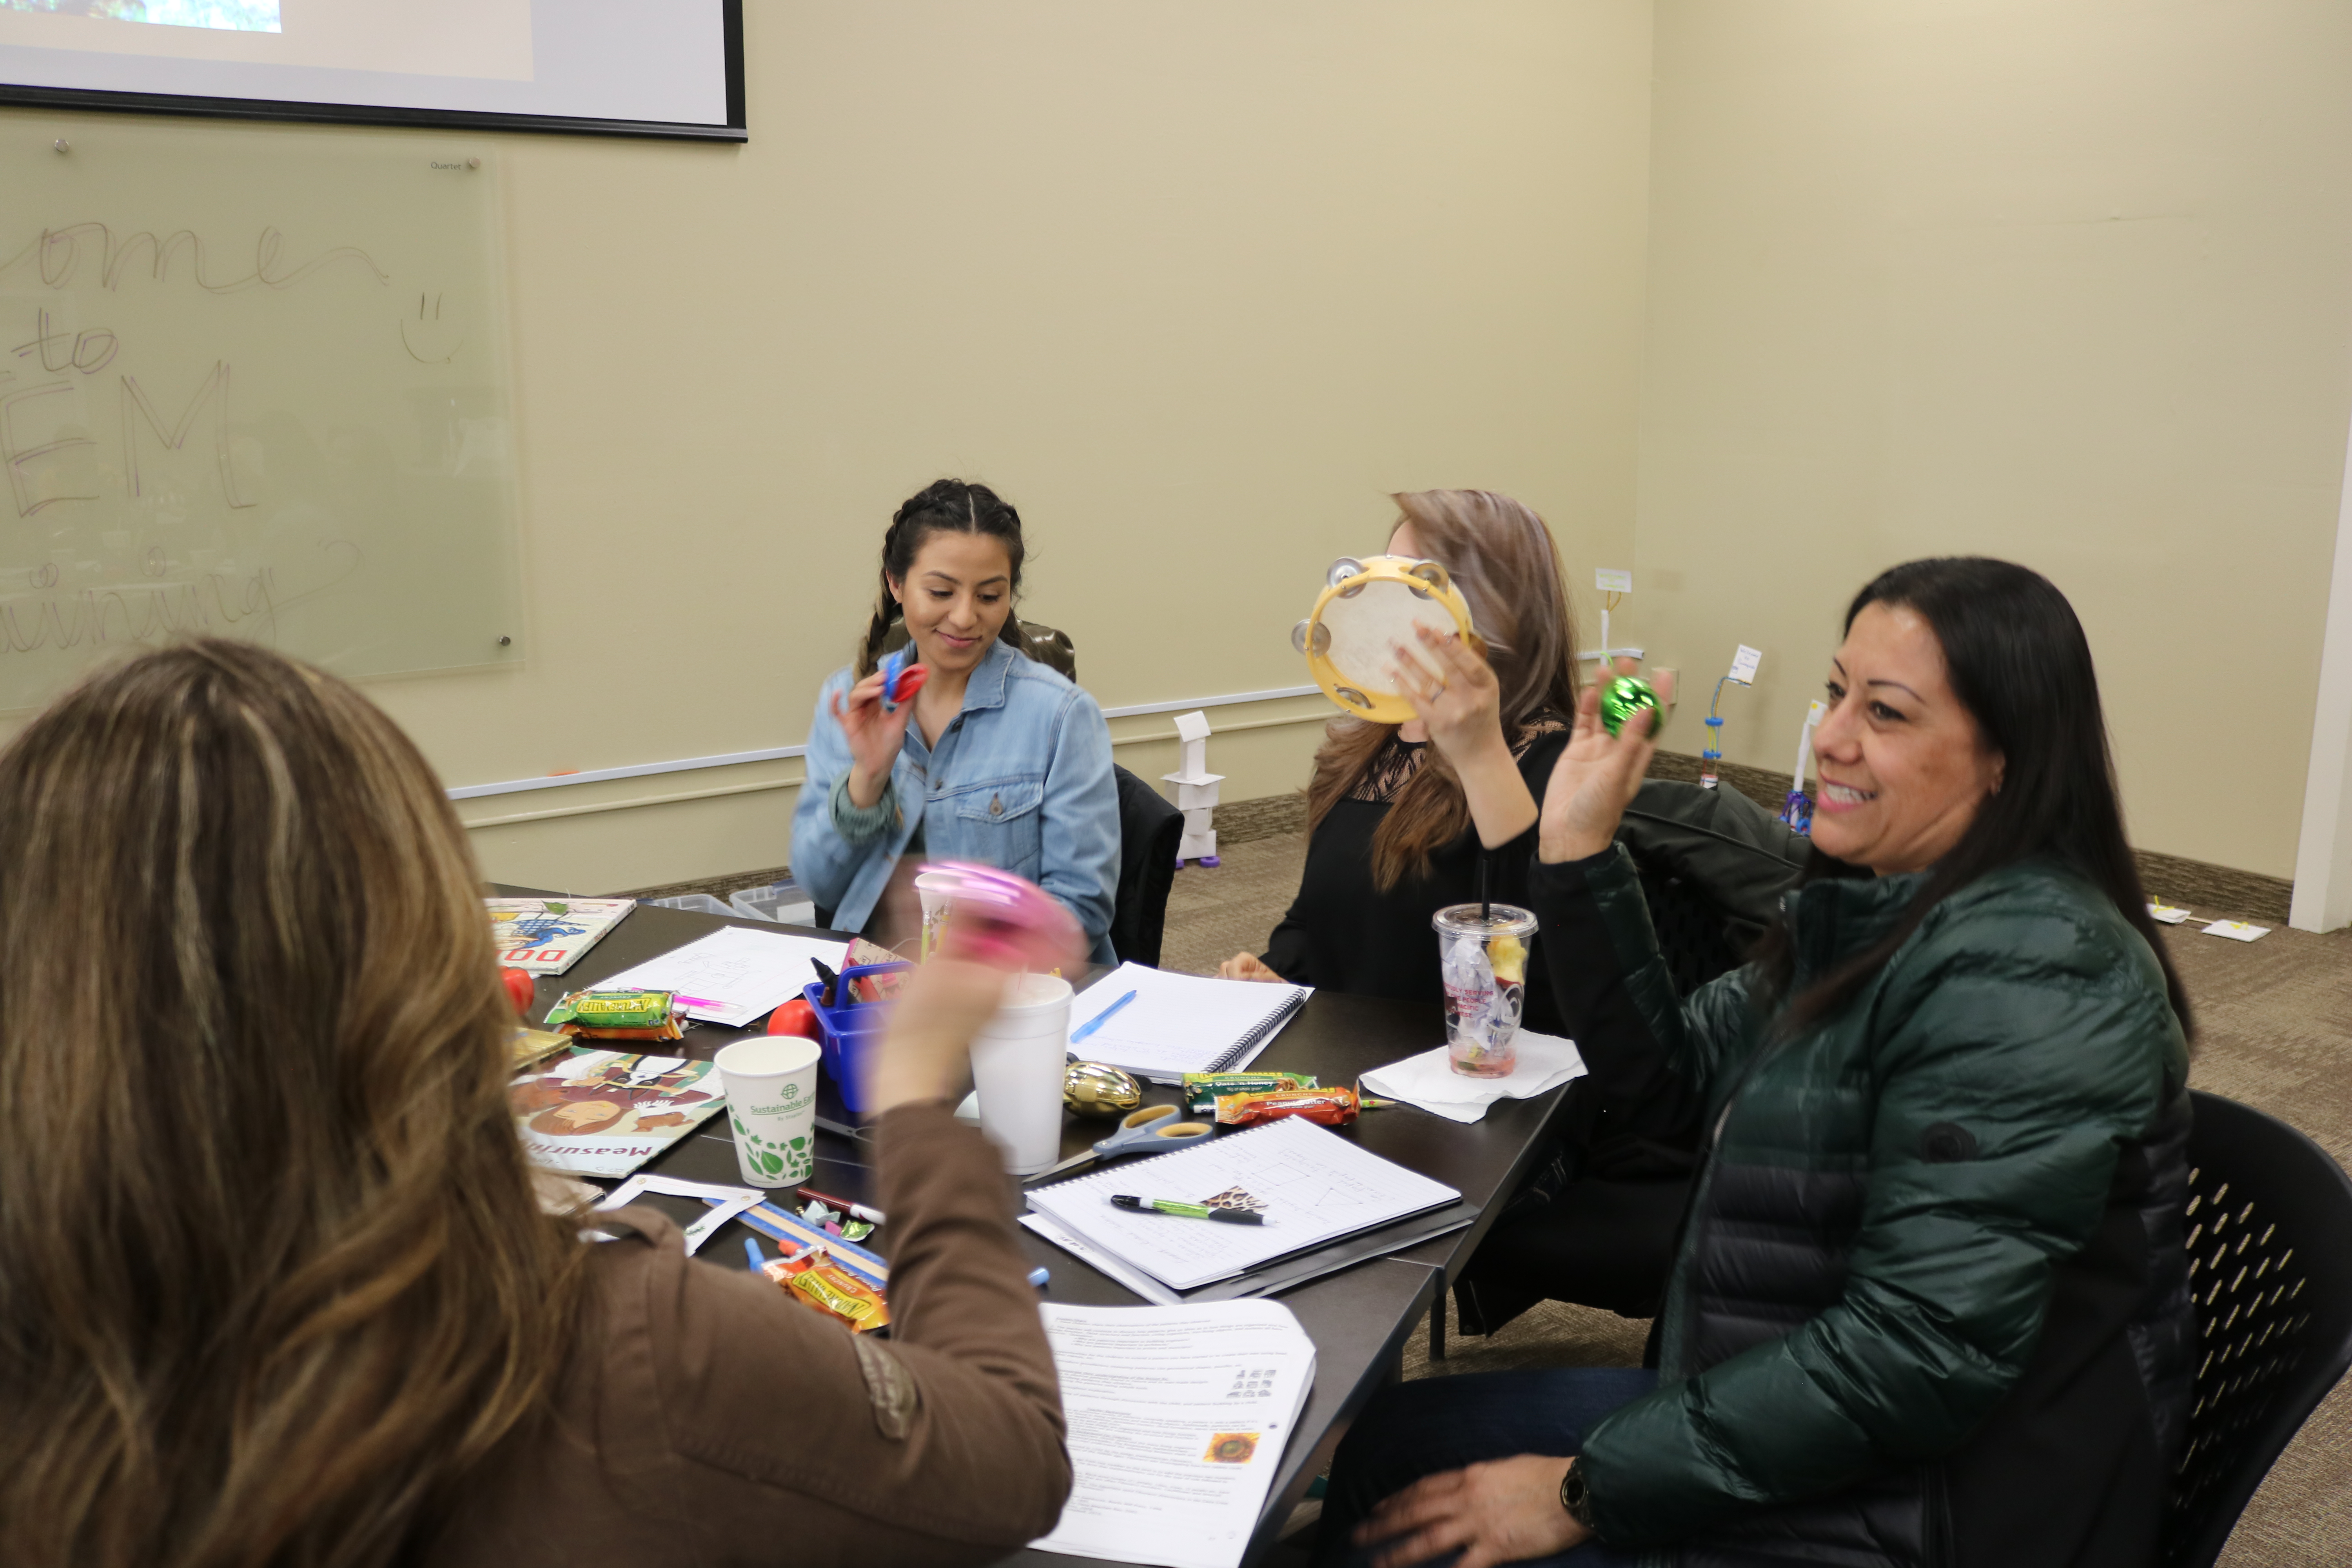 STEMteacher training for early childhood educators inspire development centers.